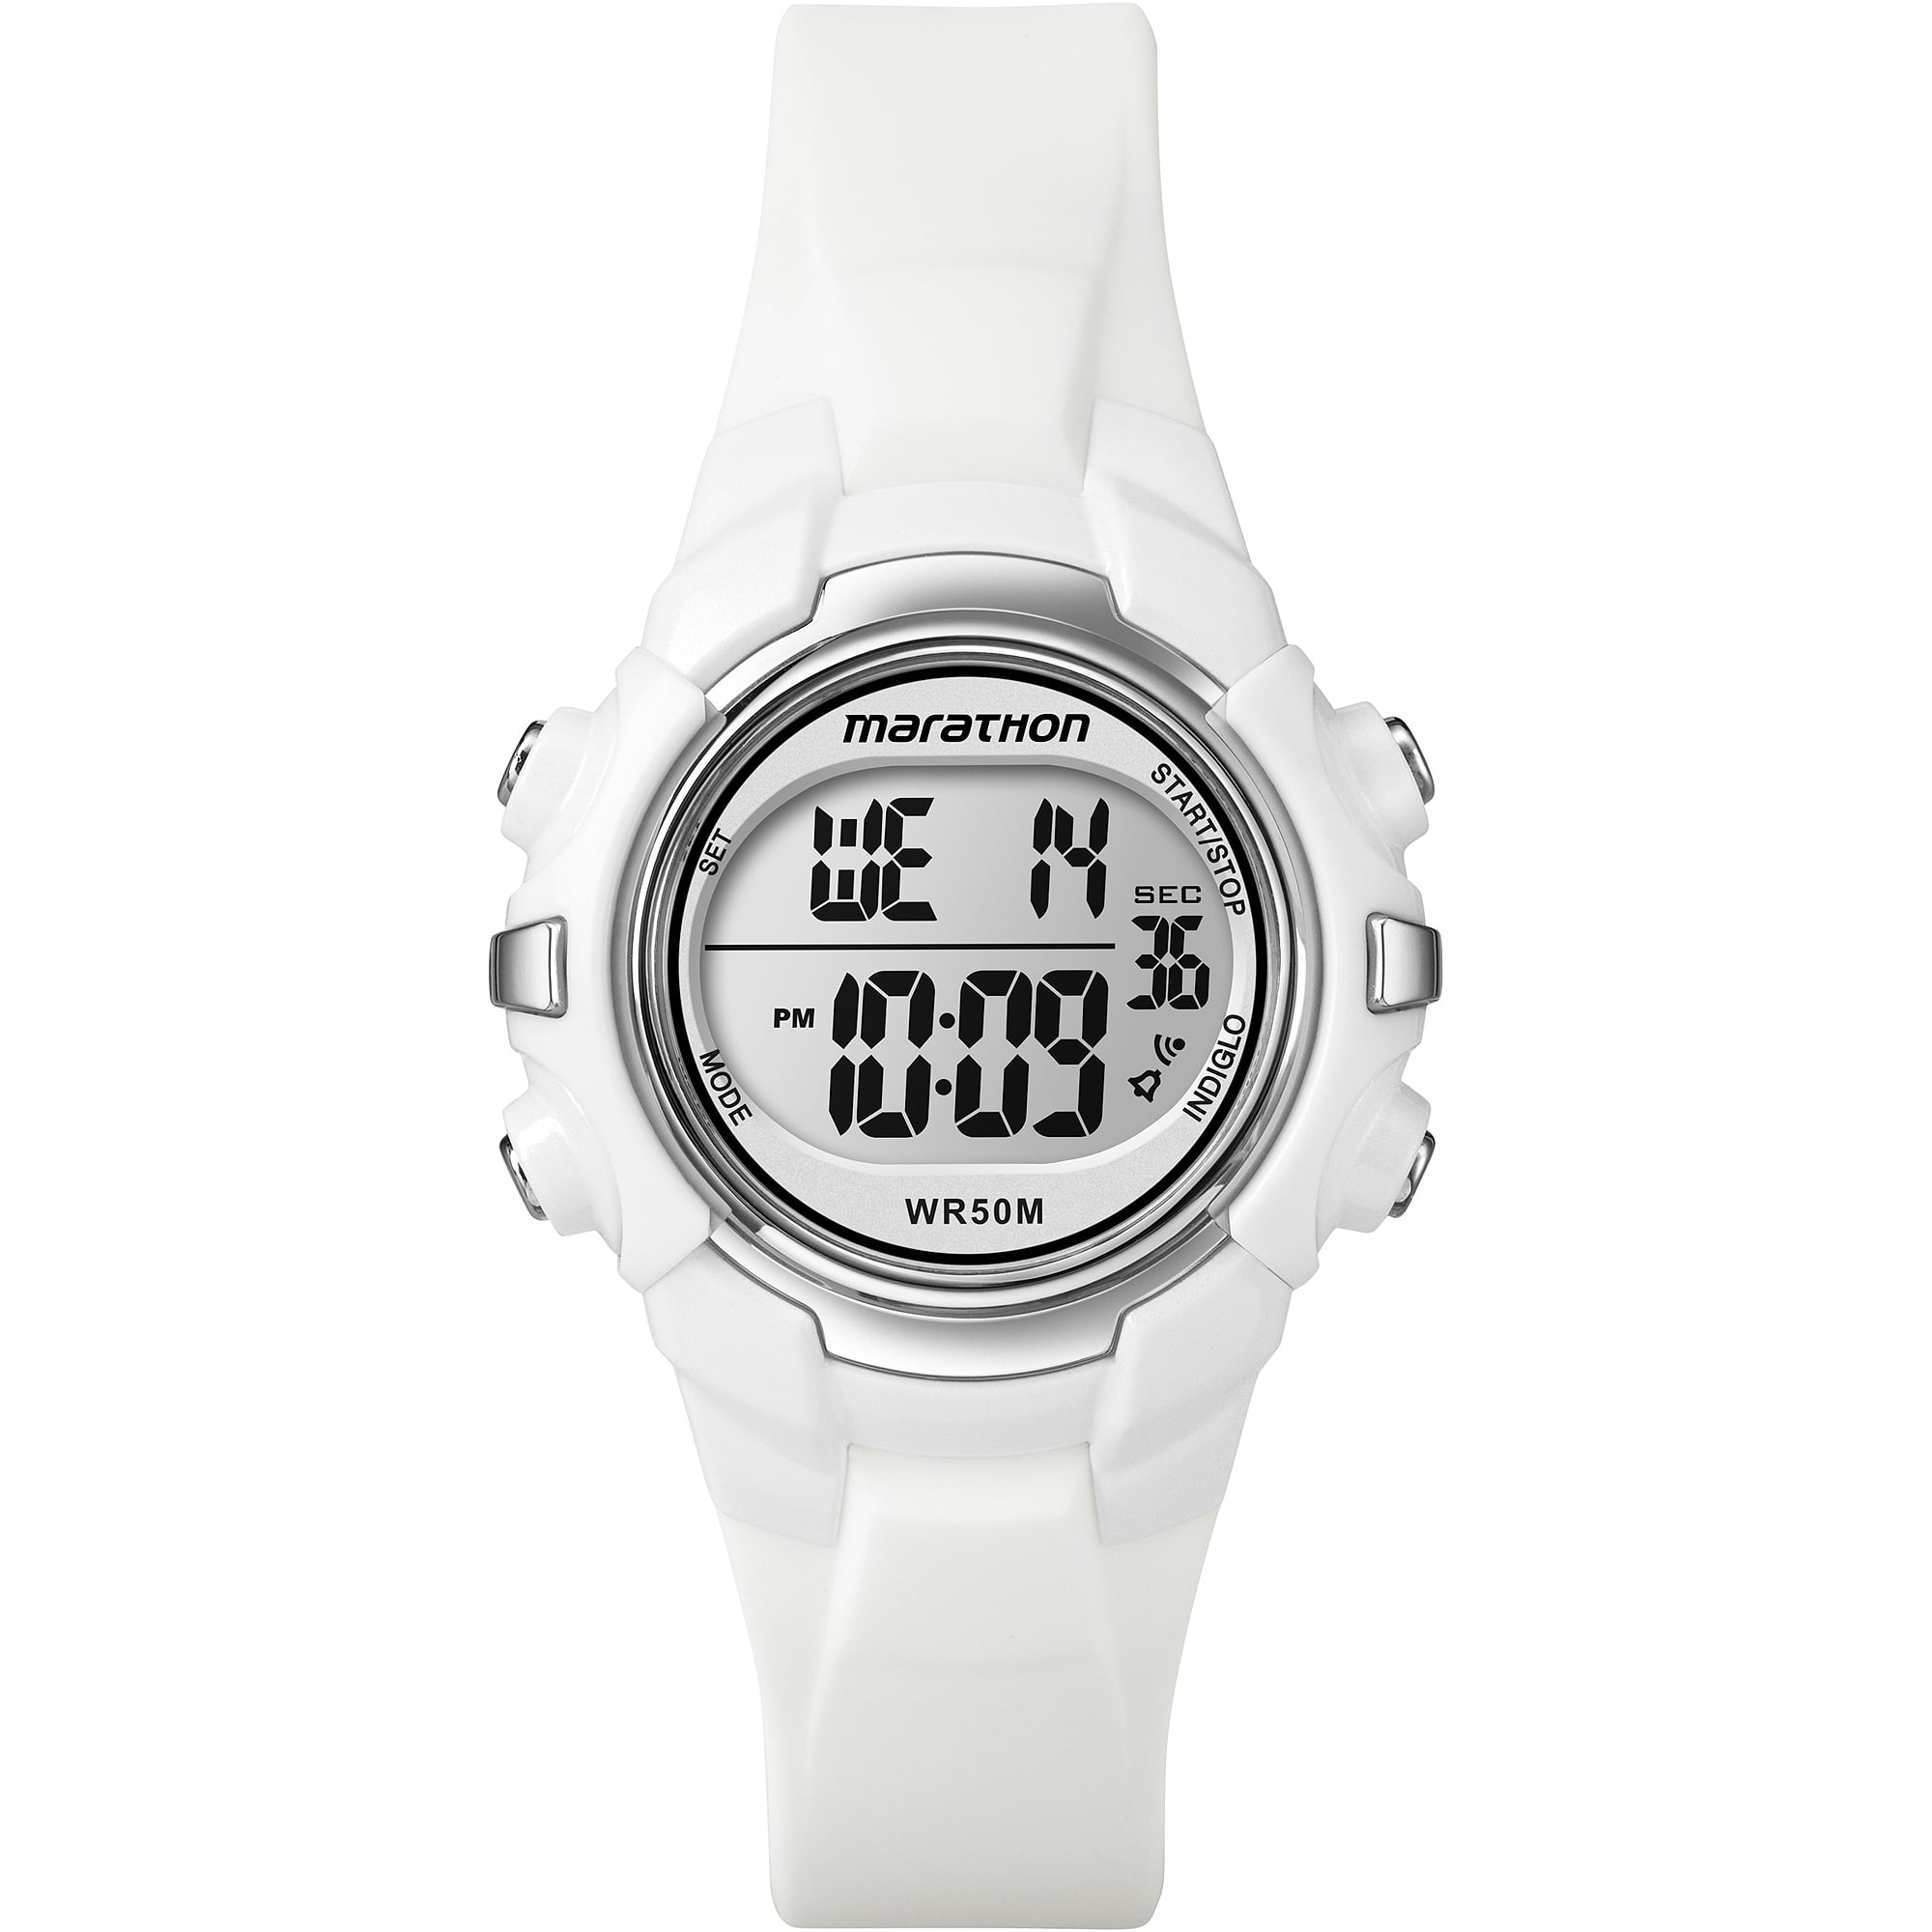 Timex - Marathon Unisex Digital Mid 